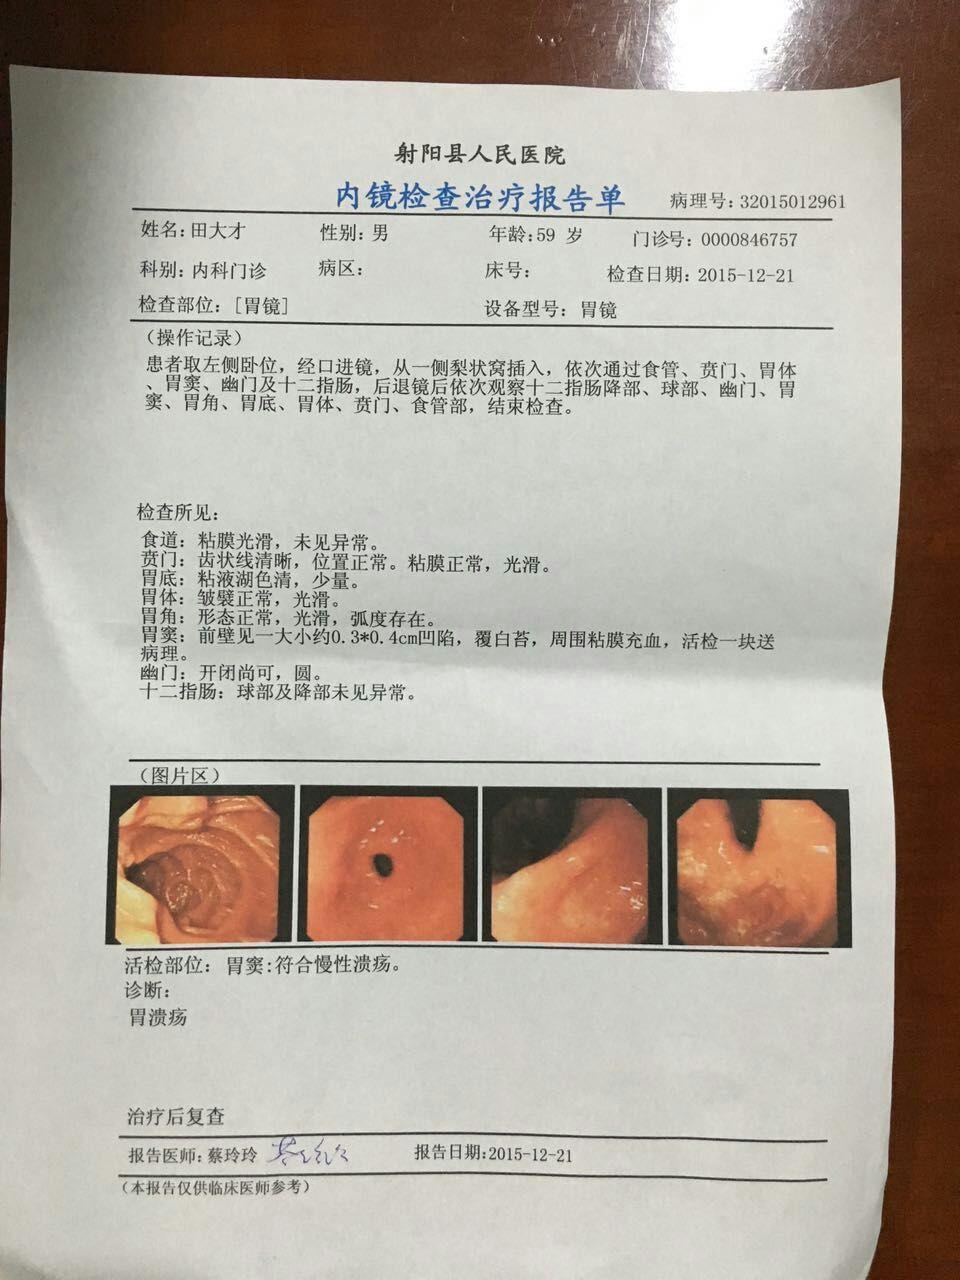 胃癌早期胃镜报告图片图片